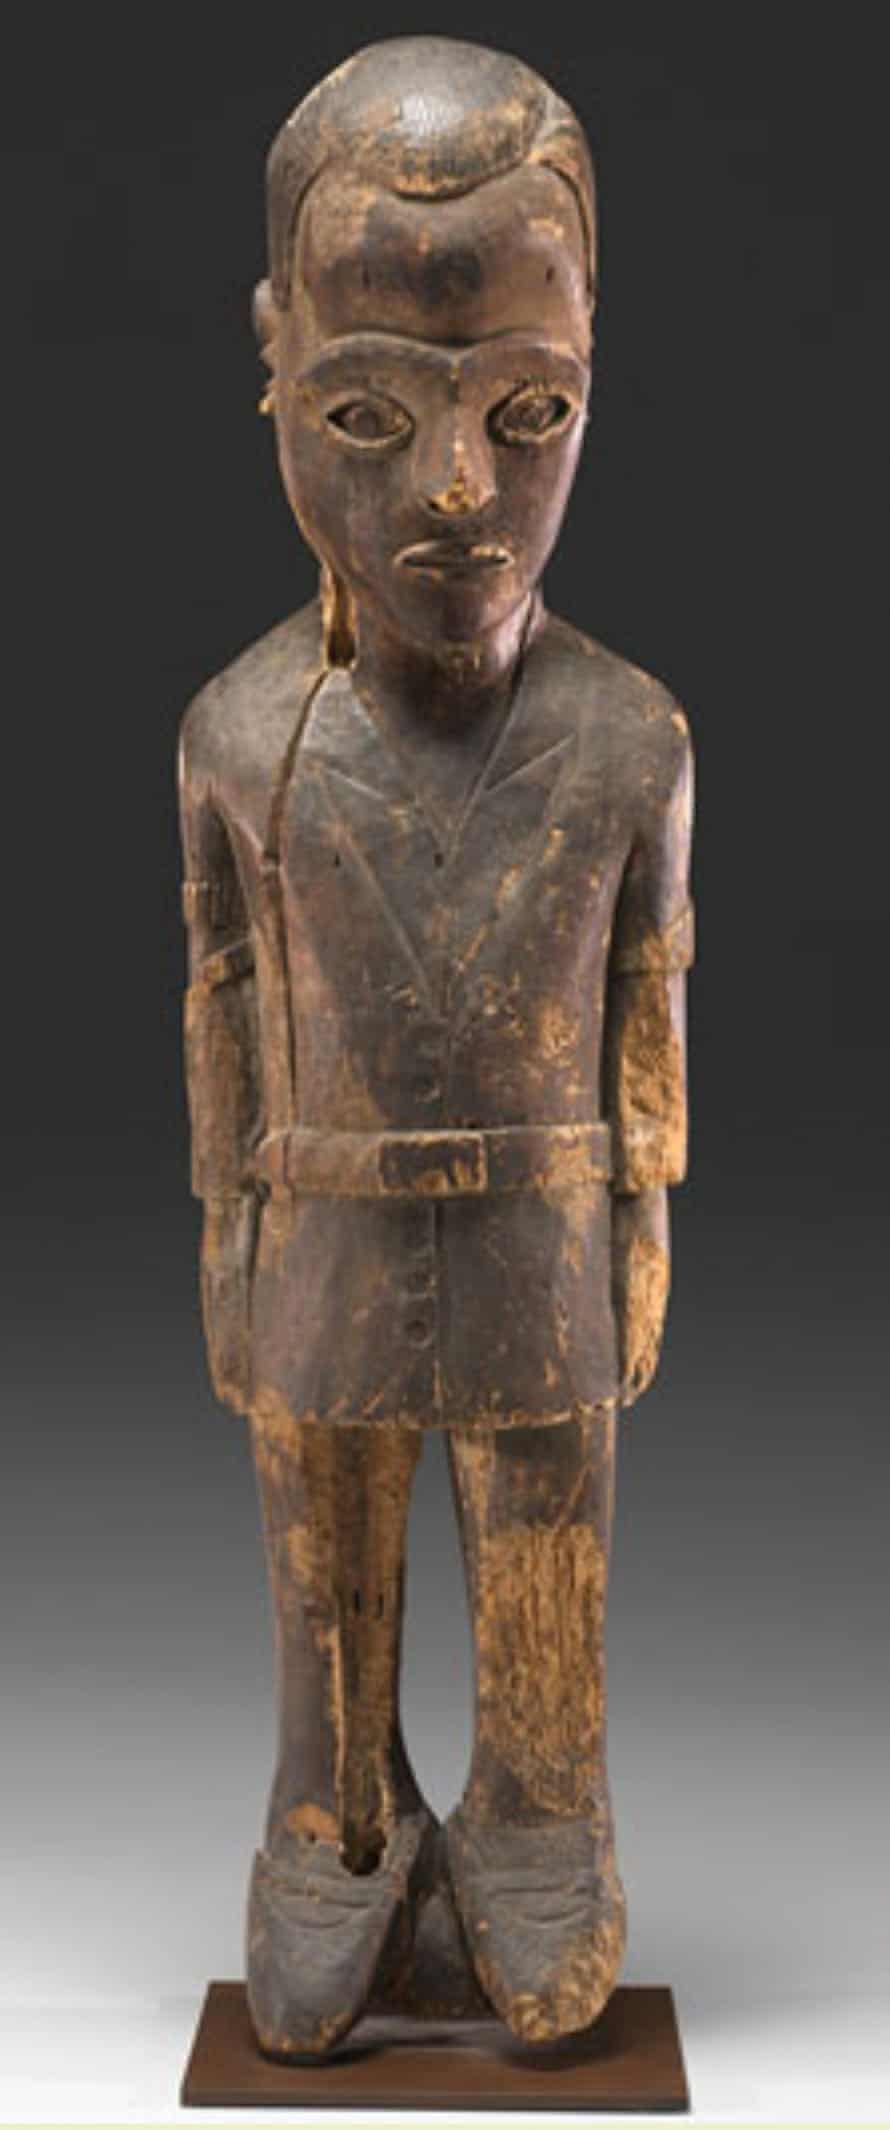 Diviner’s Figure representing Maximilien Balot, 1931 Pende culture.